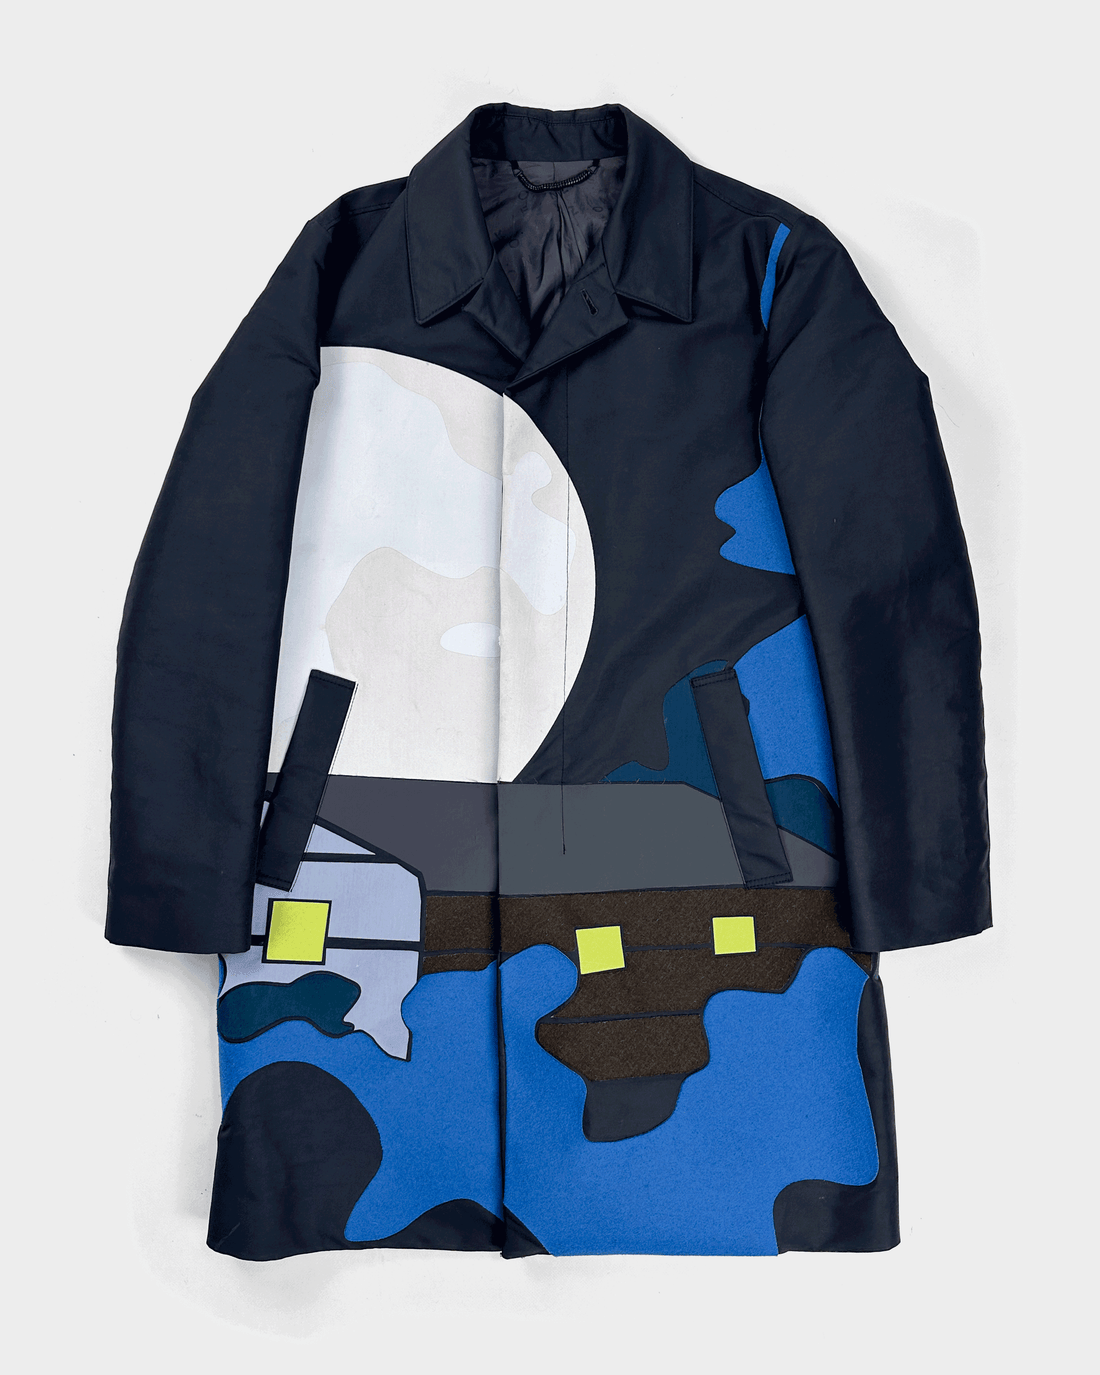 Kenzo Runway Landscape Coat Jacket F/W 2014